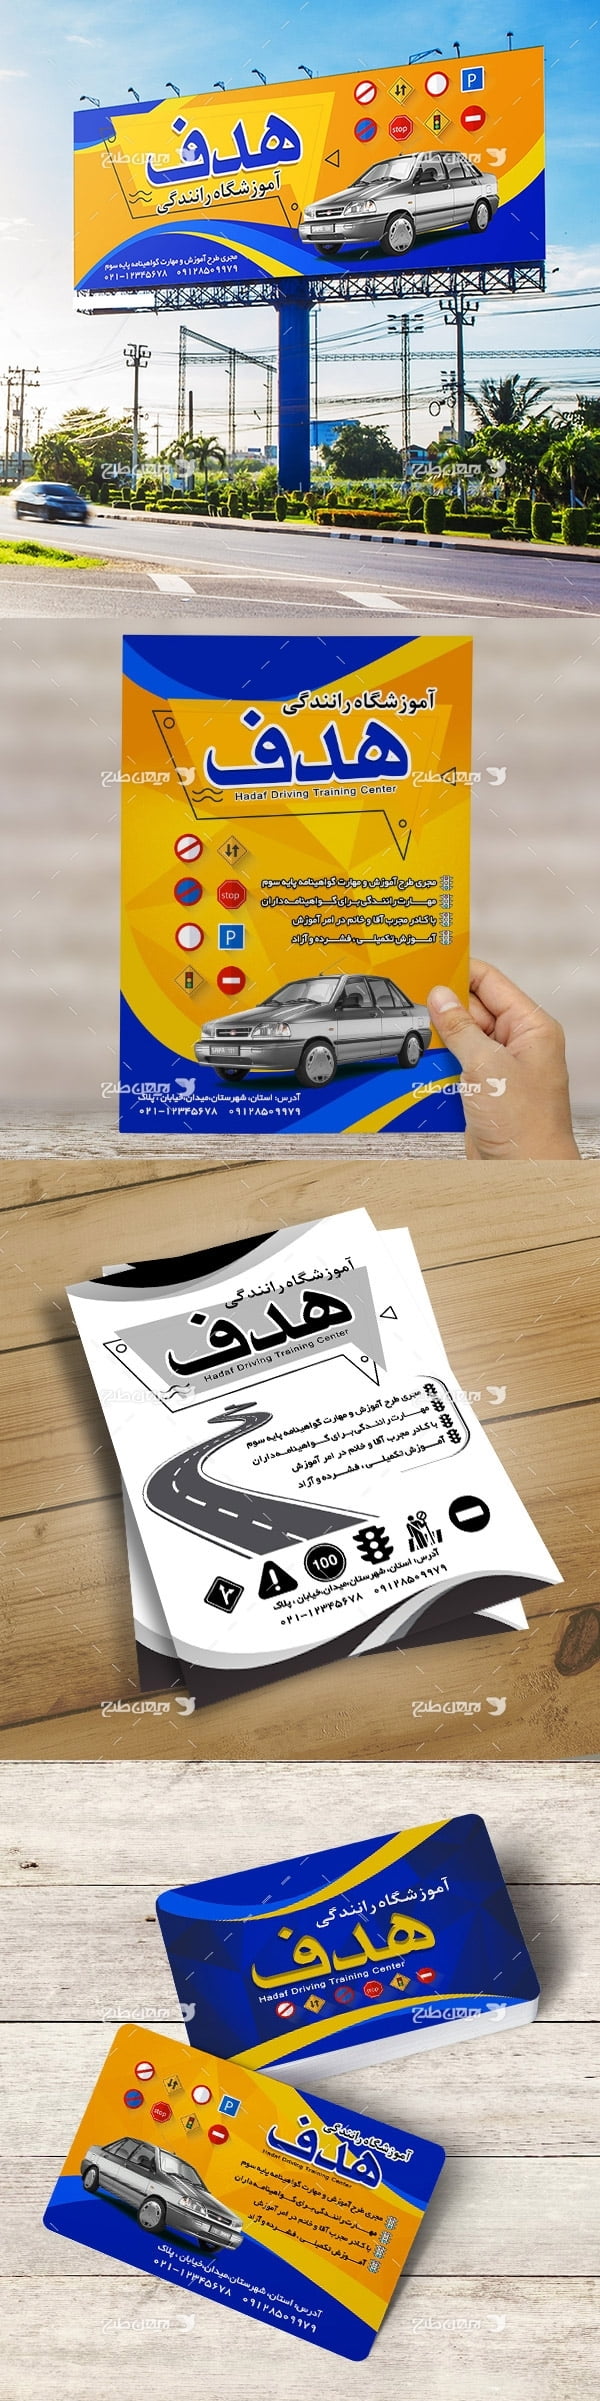 ست تبلیغاتی آموزشگاه رانندگی (تراکت رنگی، کارت ویزیت، تابلو سردرب ، تراکت ریسو)